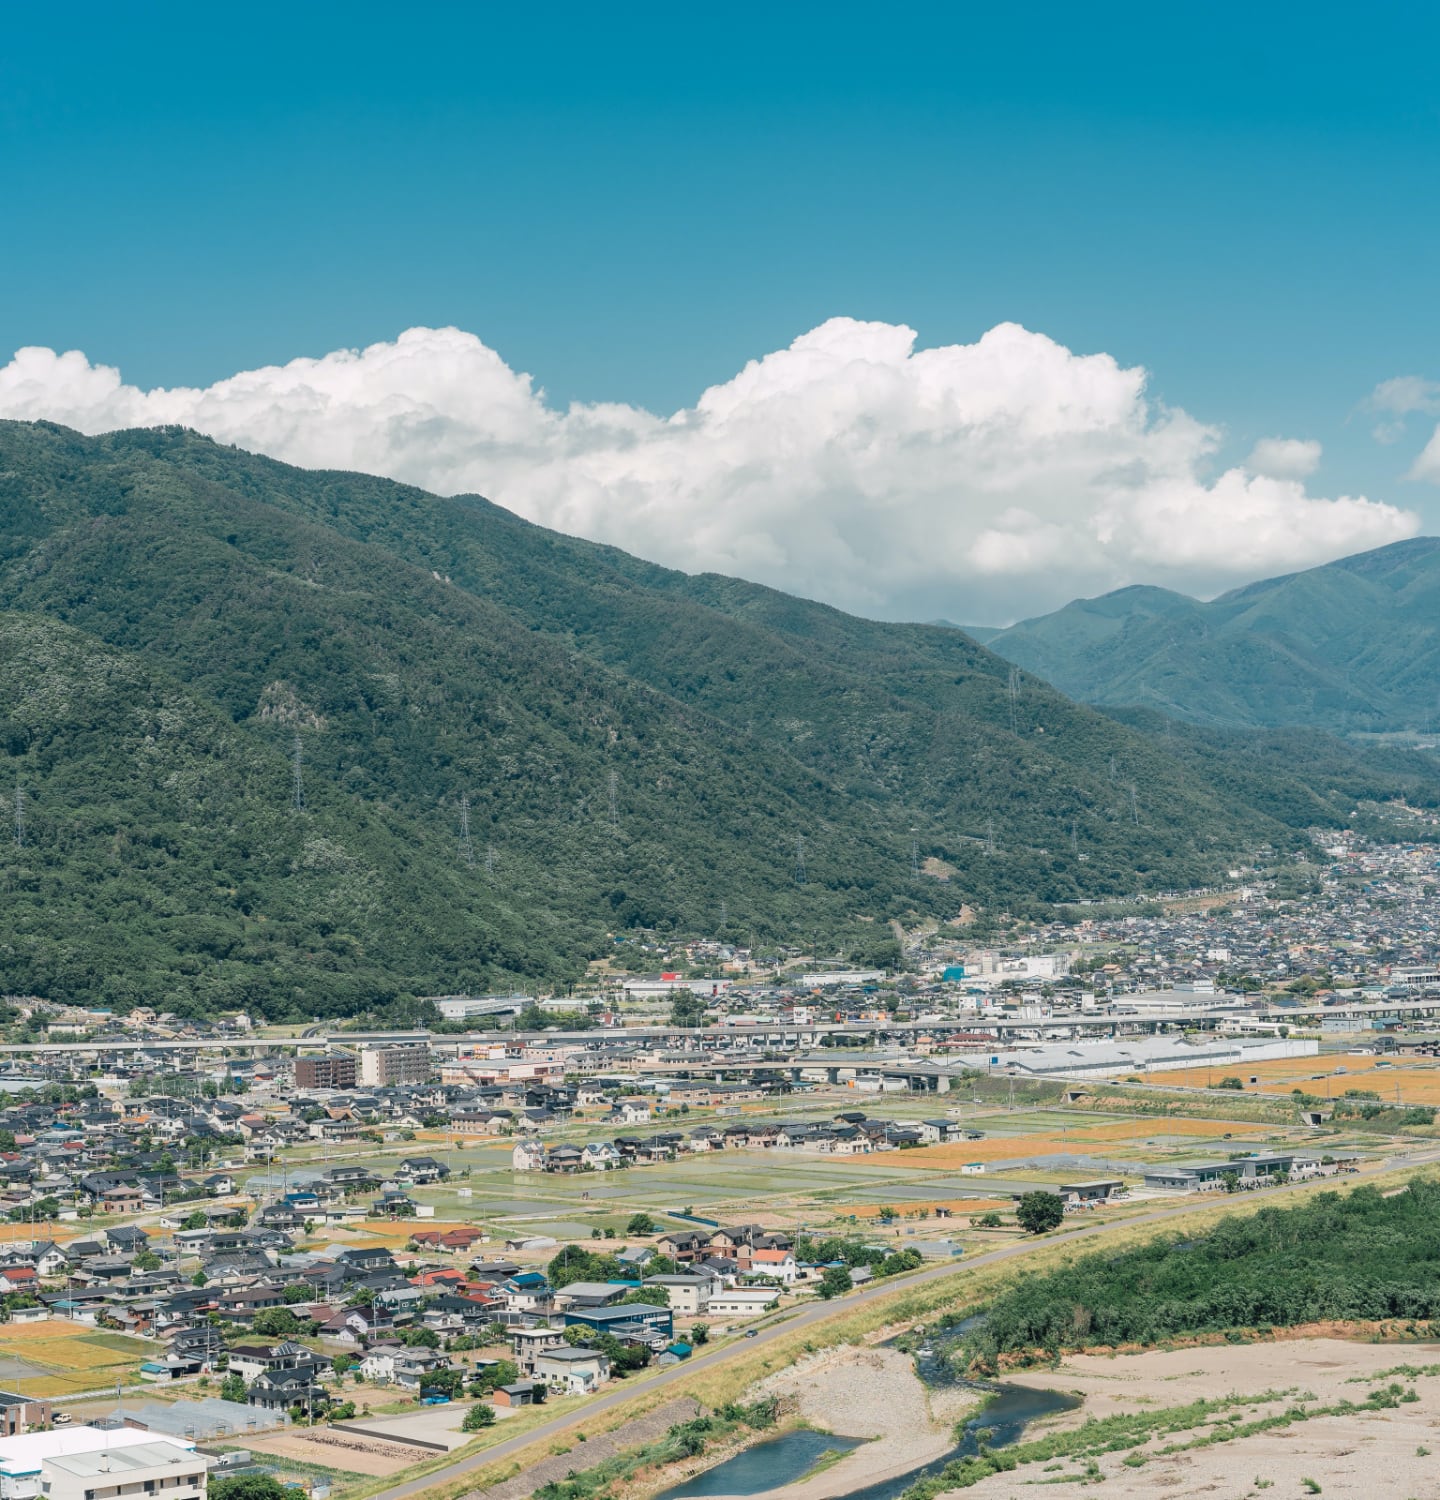 写真：migakiba uedaの上田市街地。背景には、上田市の北側にそびえ、上田のシンボルともいわれる「太郎山」の山並みが広がっています。手前の近景には北陸新幹線が走っており、線路を挟むように住宅、商業施設、田畑があり、街並みを形成しています。